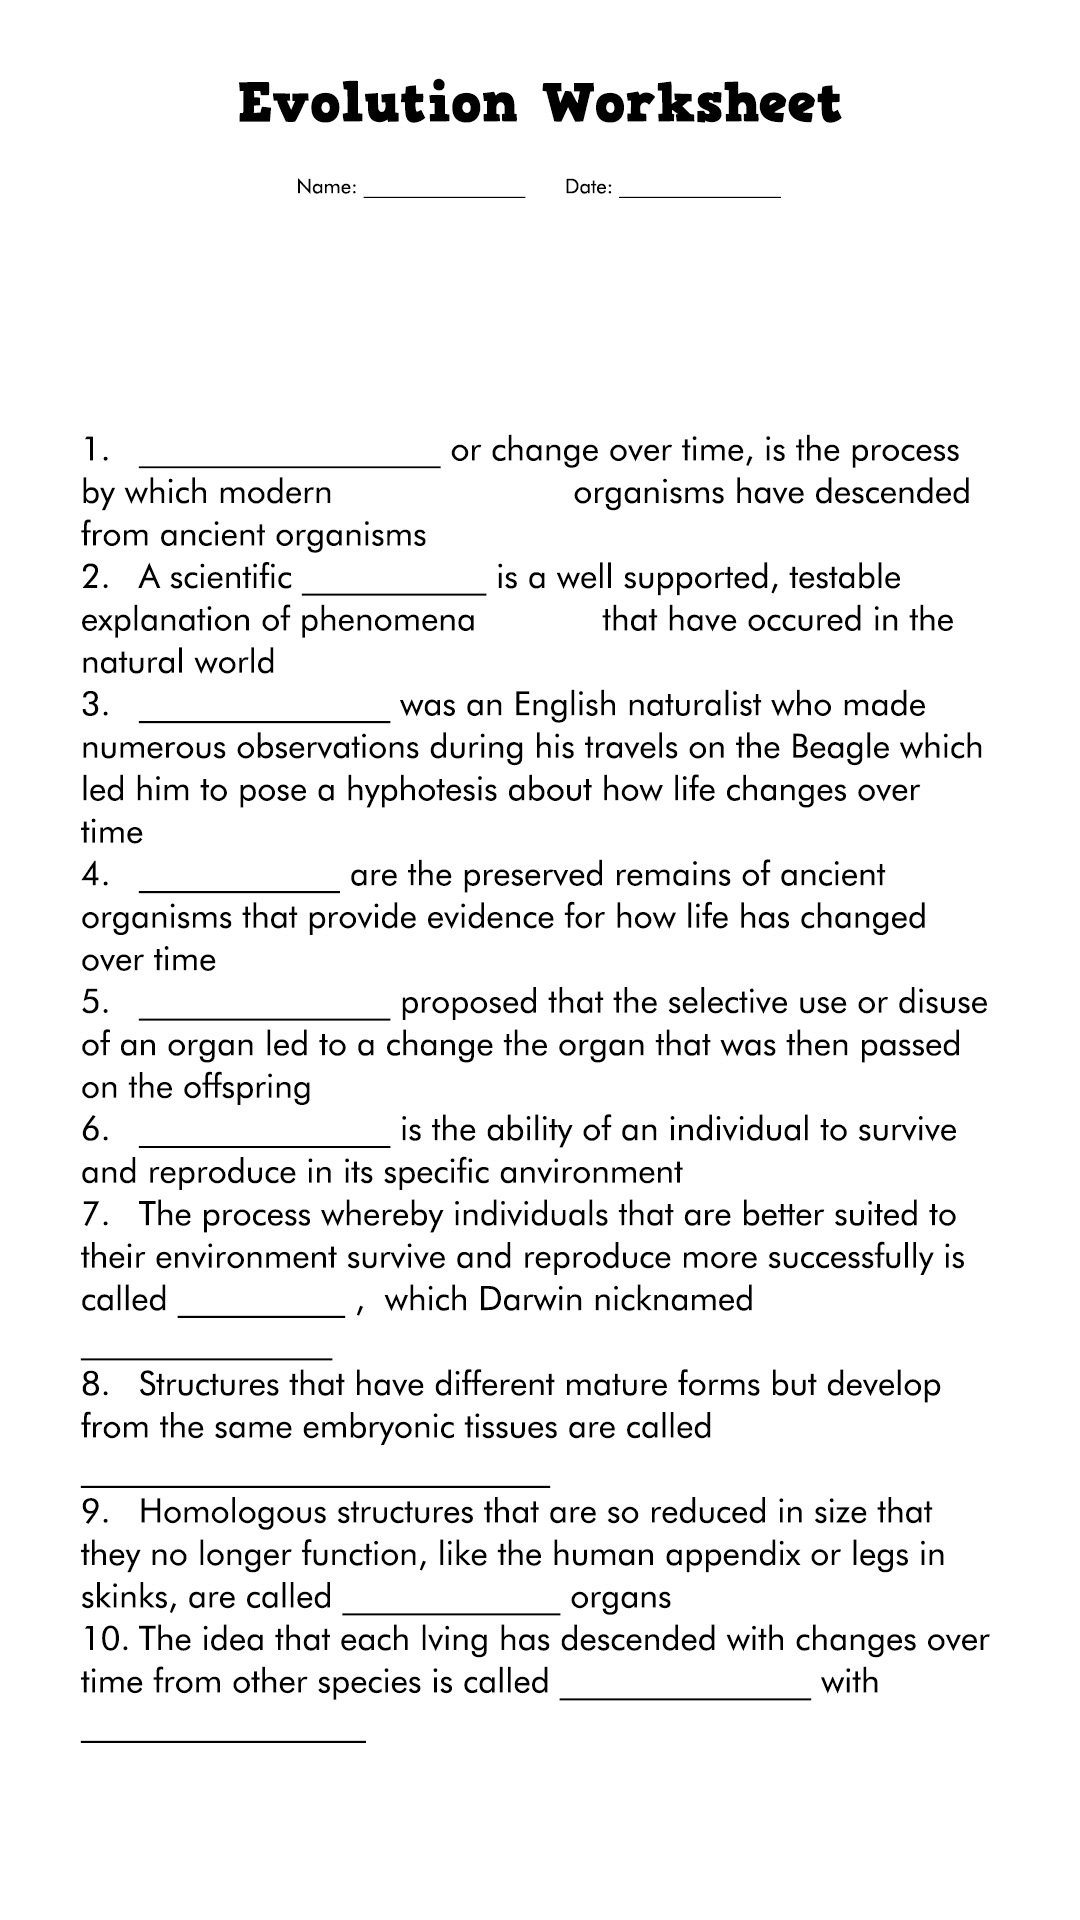 Evolution Worksheet Answers Biology